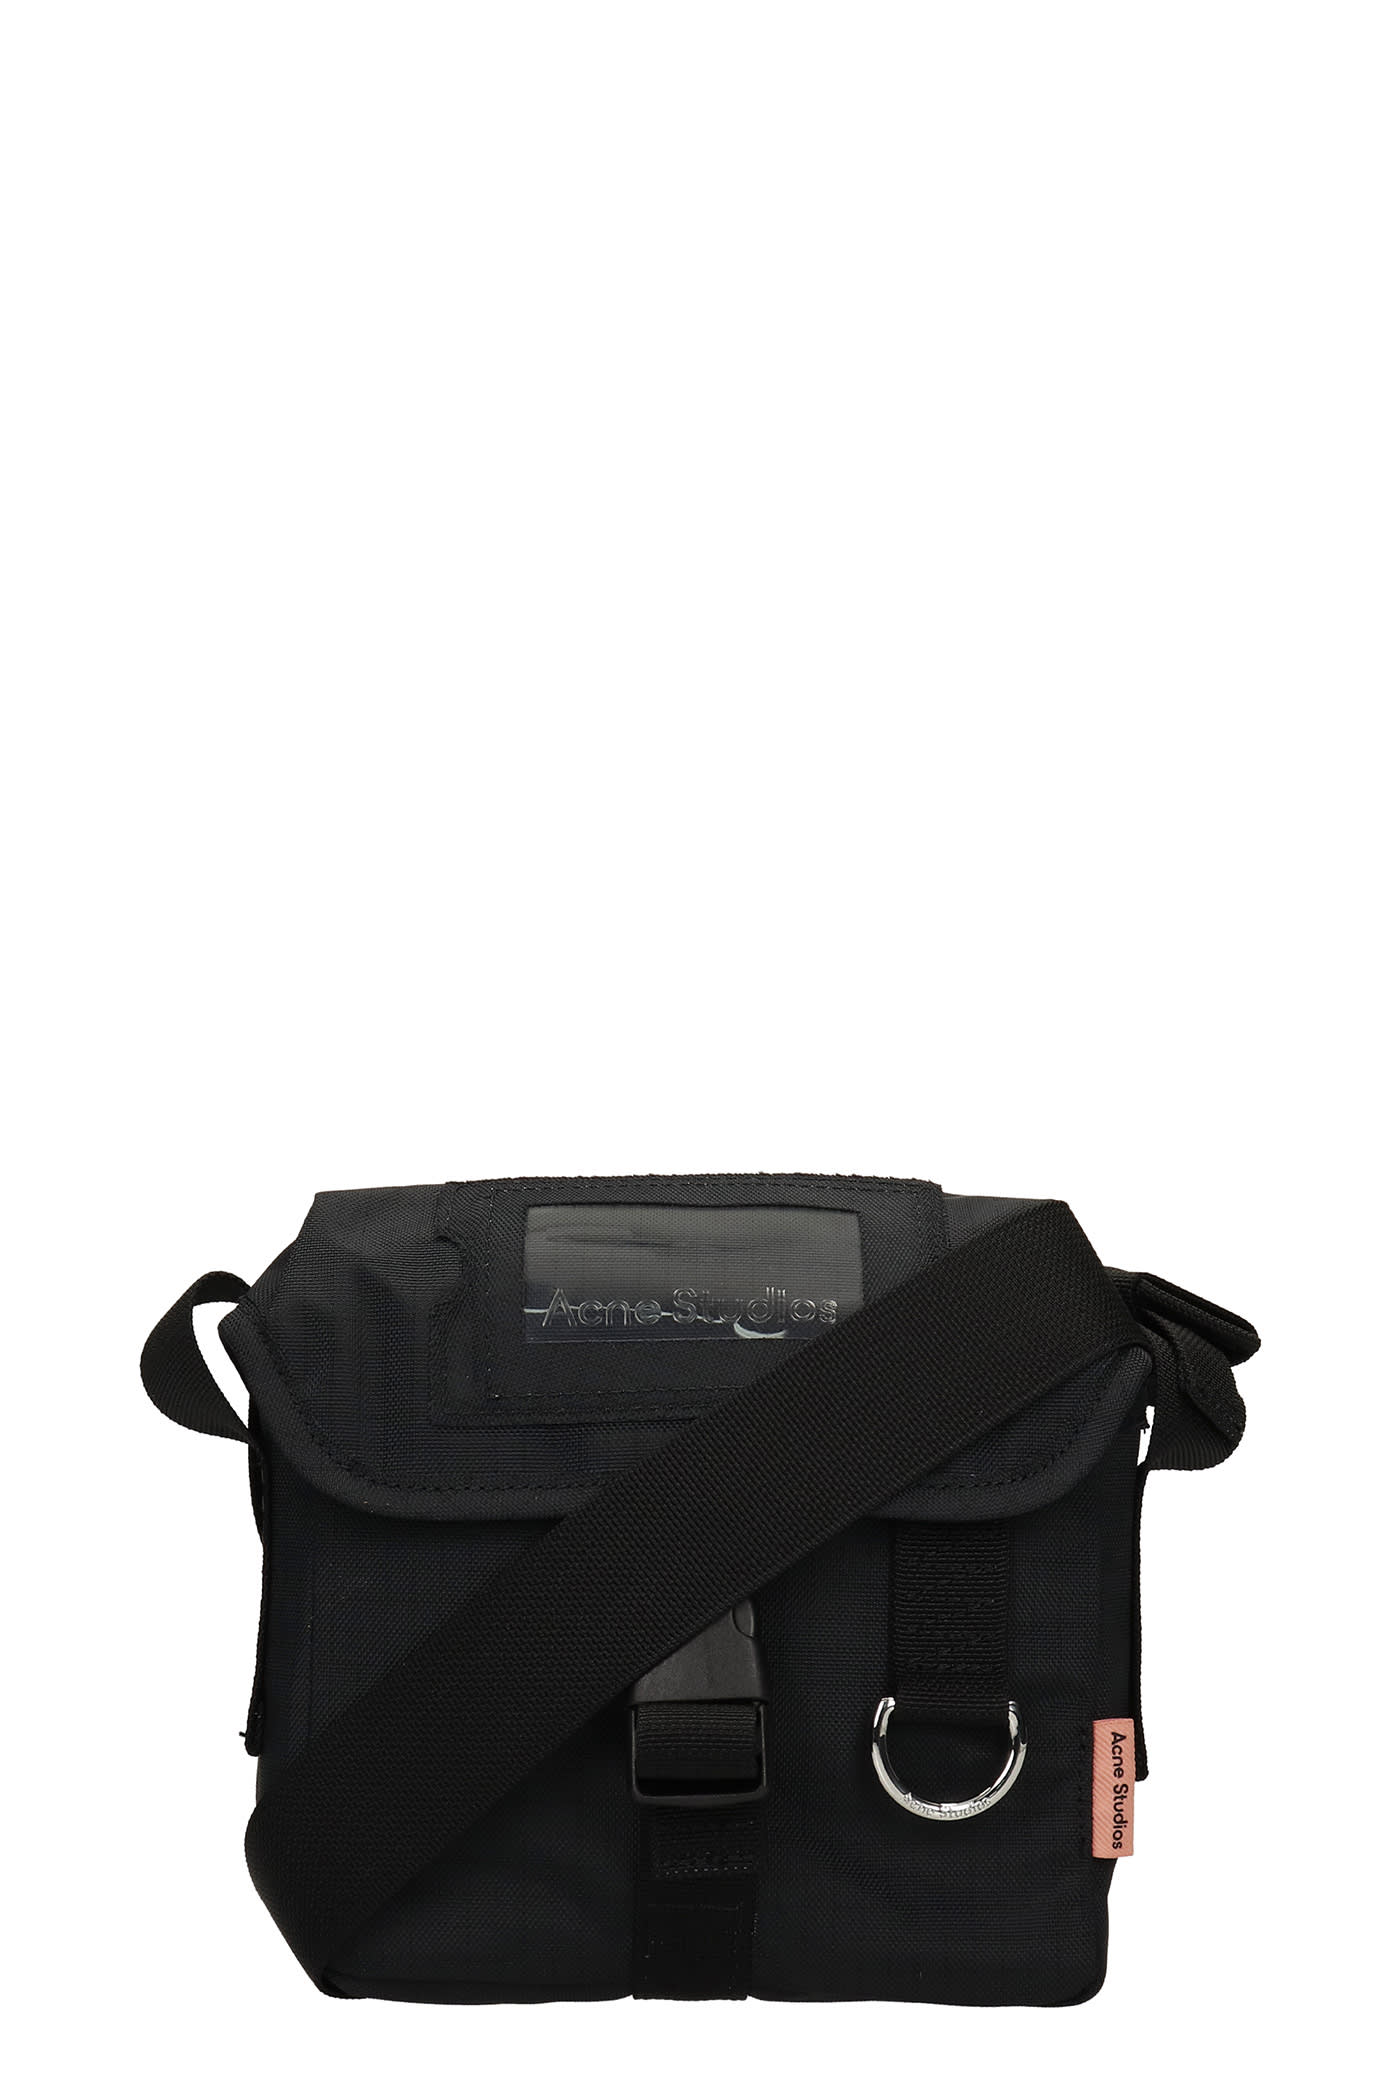 Acne Studios Shoulder Bag In Black Nylon